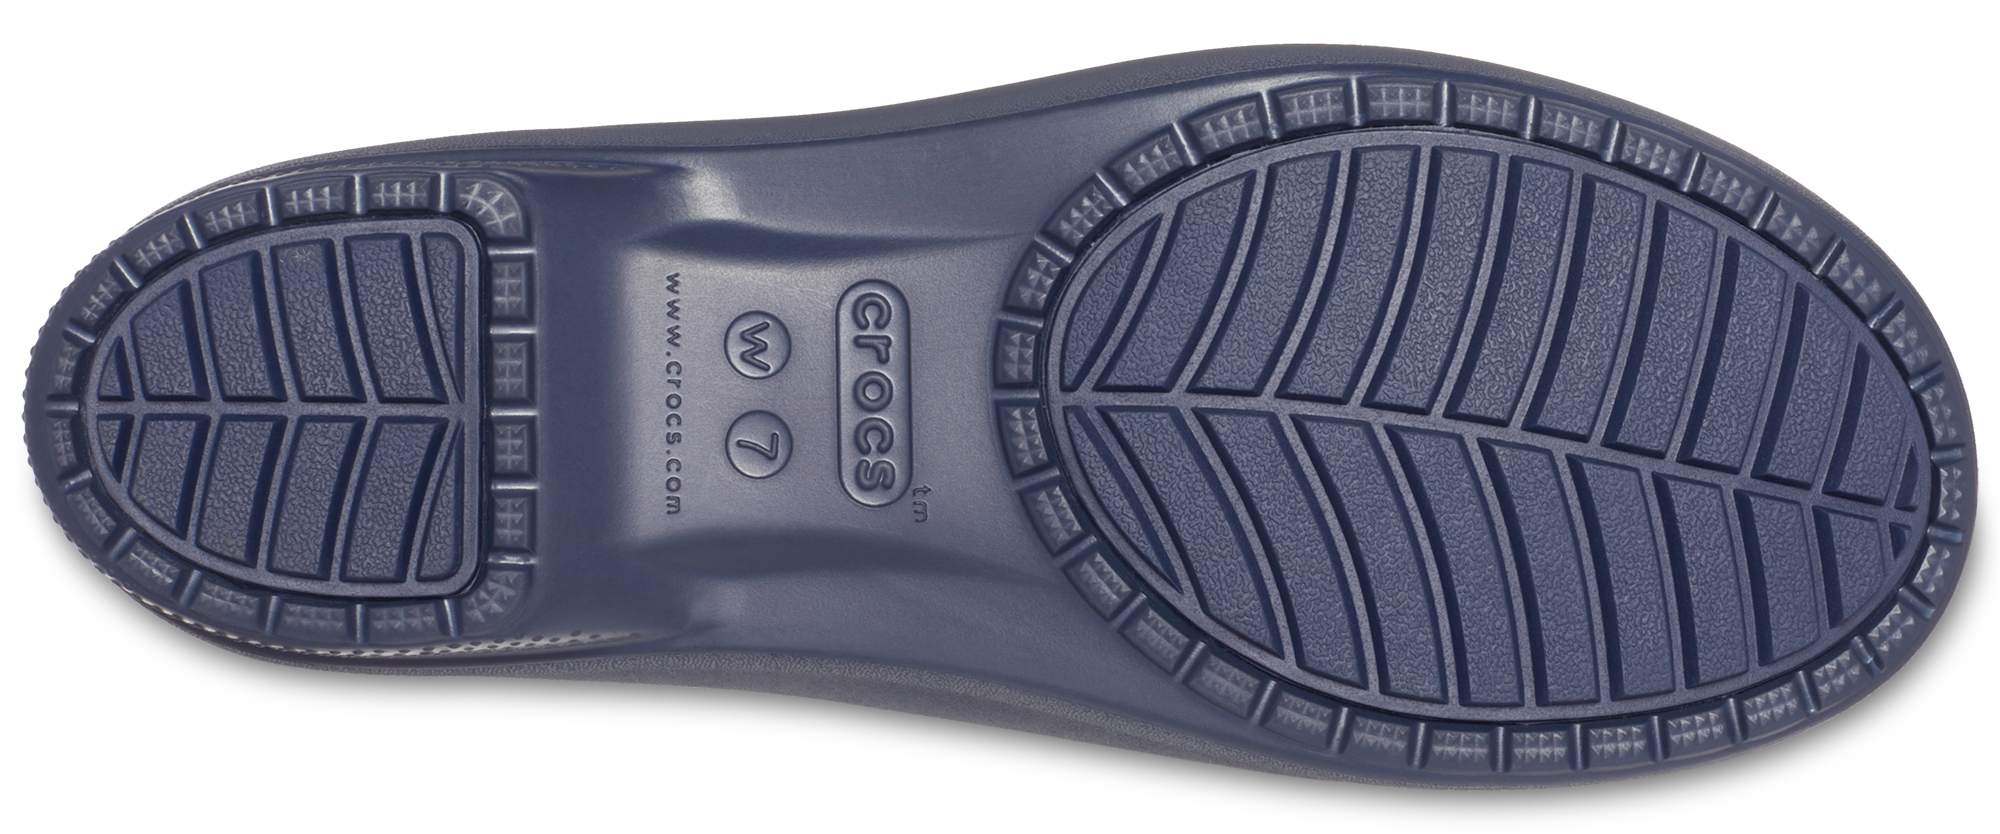 crocs footwear women's sizing chart